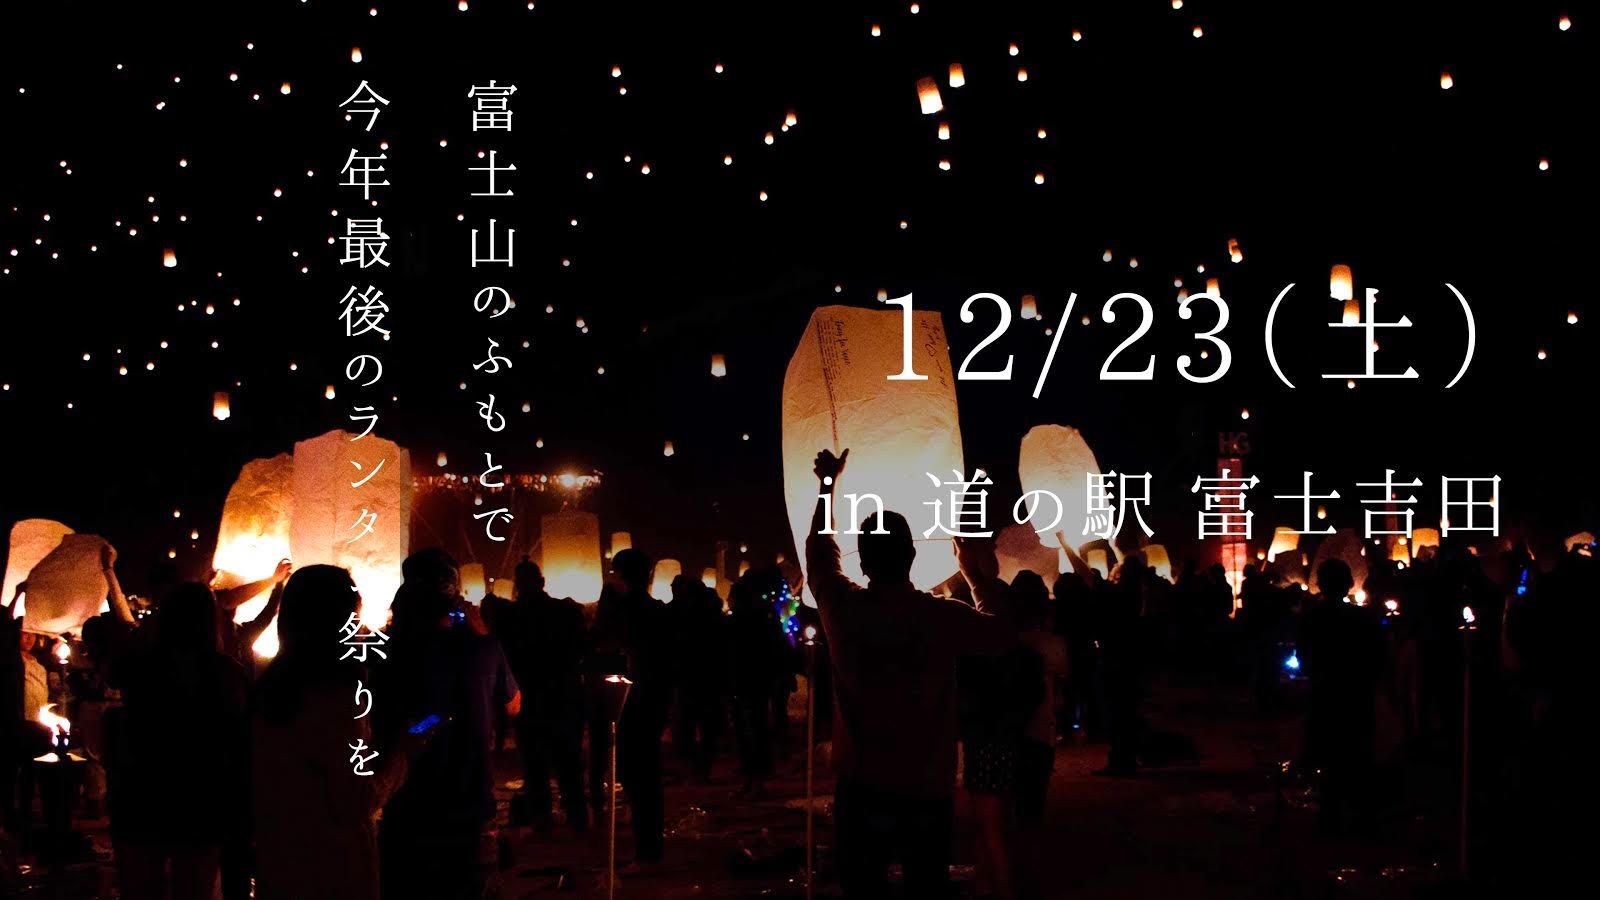 200個のランタンが富士山の背景に舞い上がる「ランタン祭り」開催決定